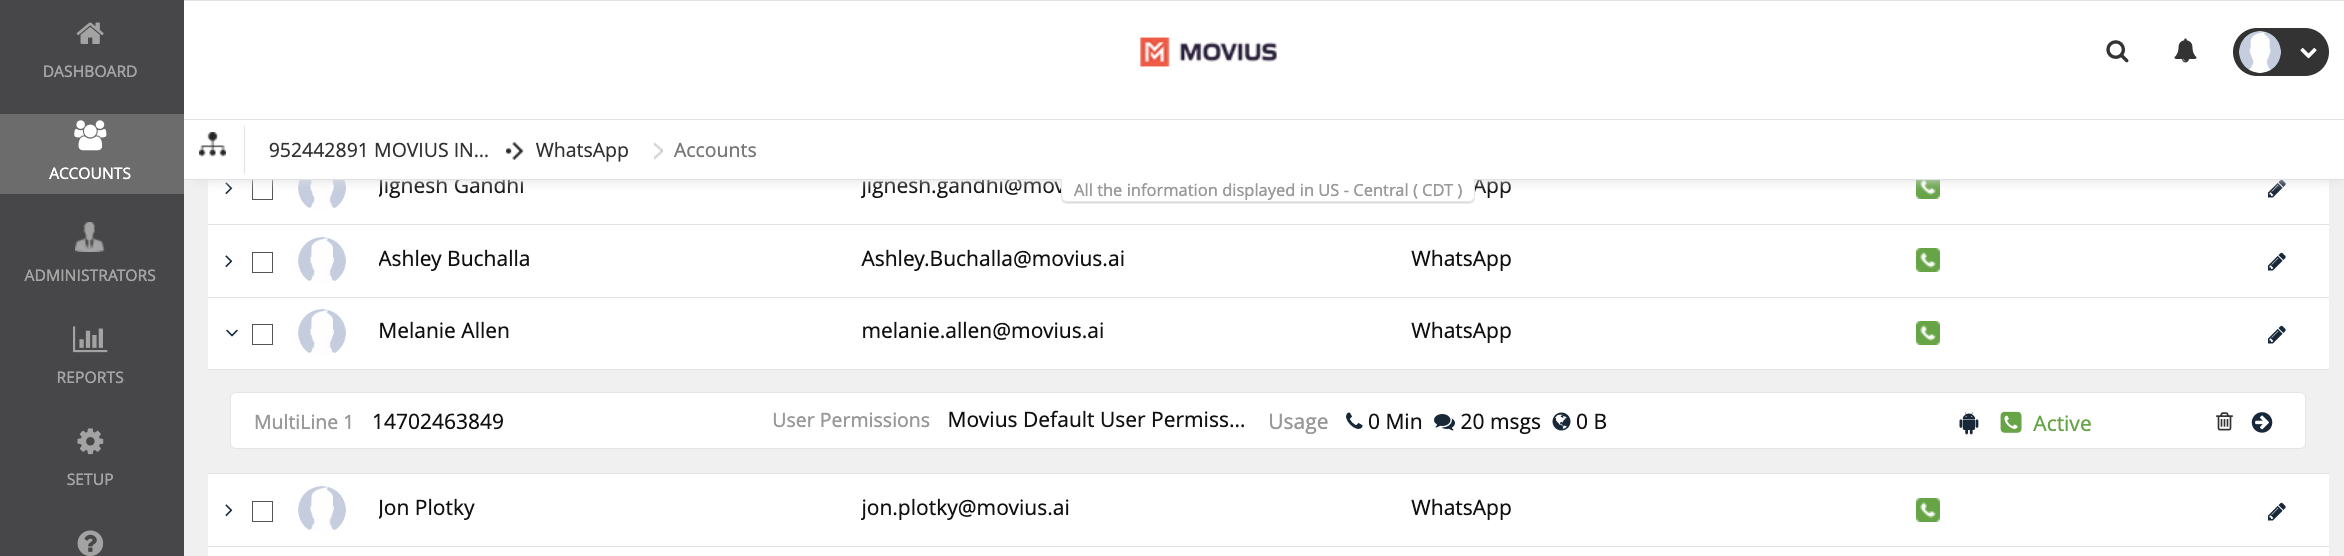 Screen showing accounts details menu